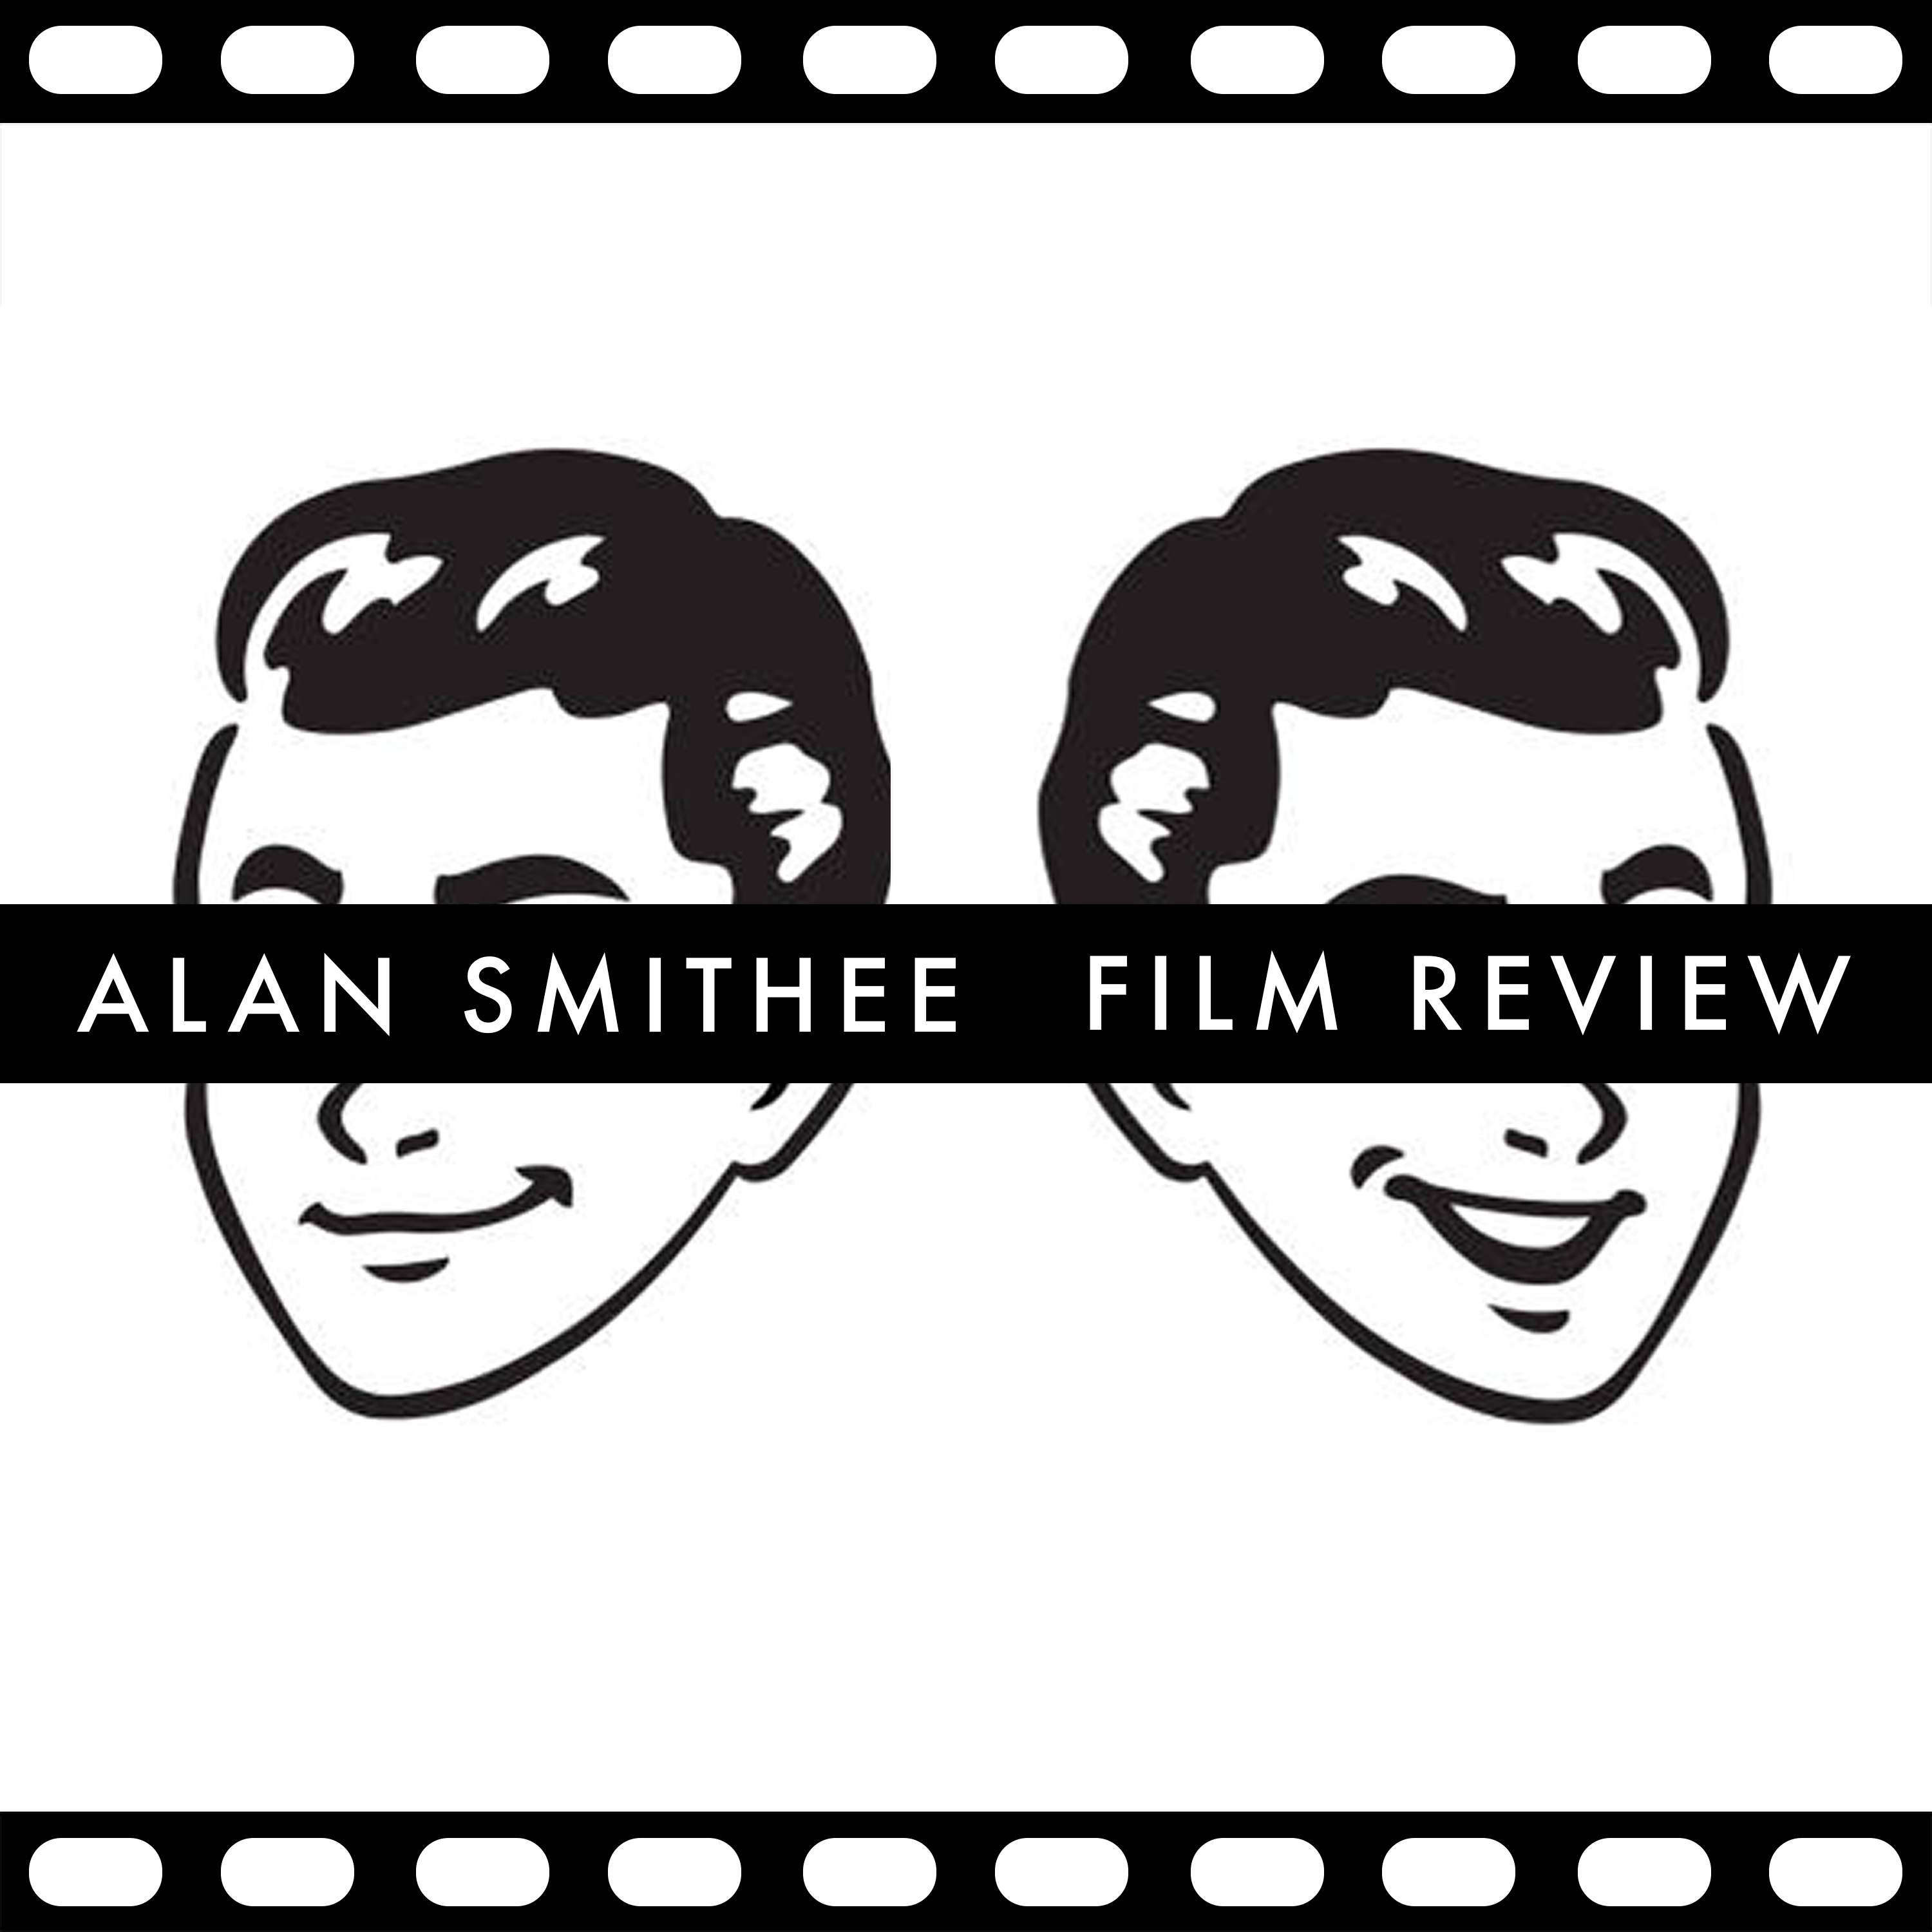 Alan Smithee Film Review